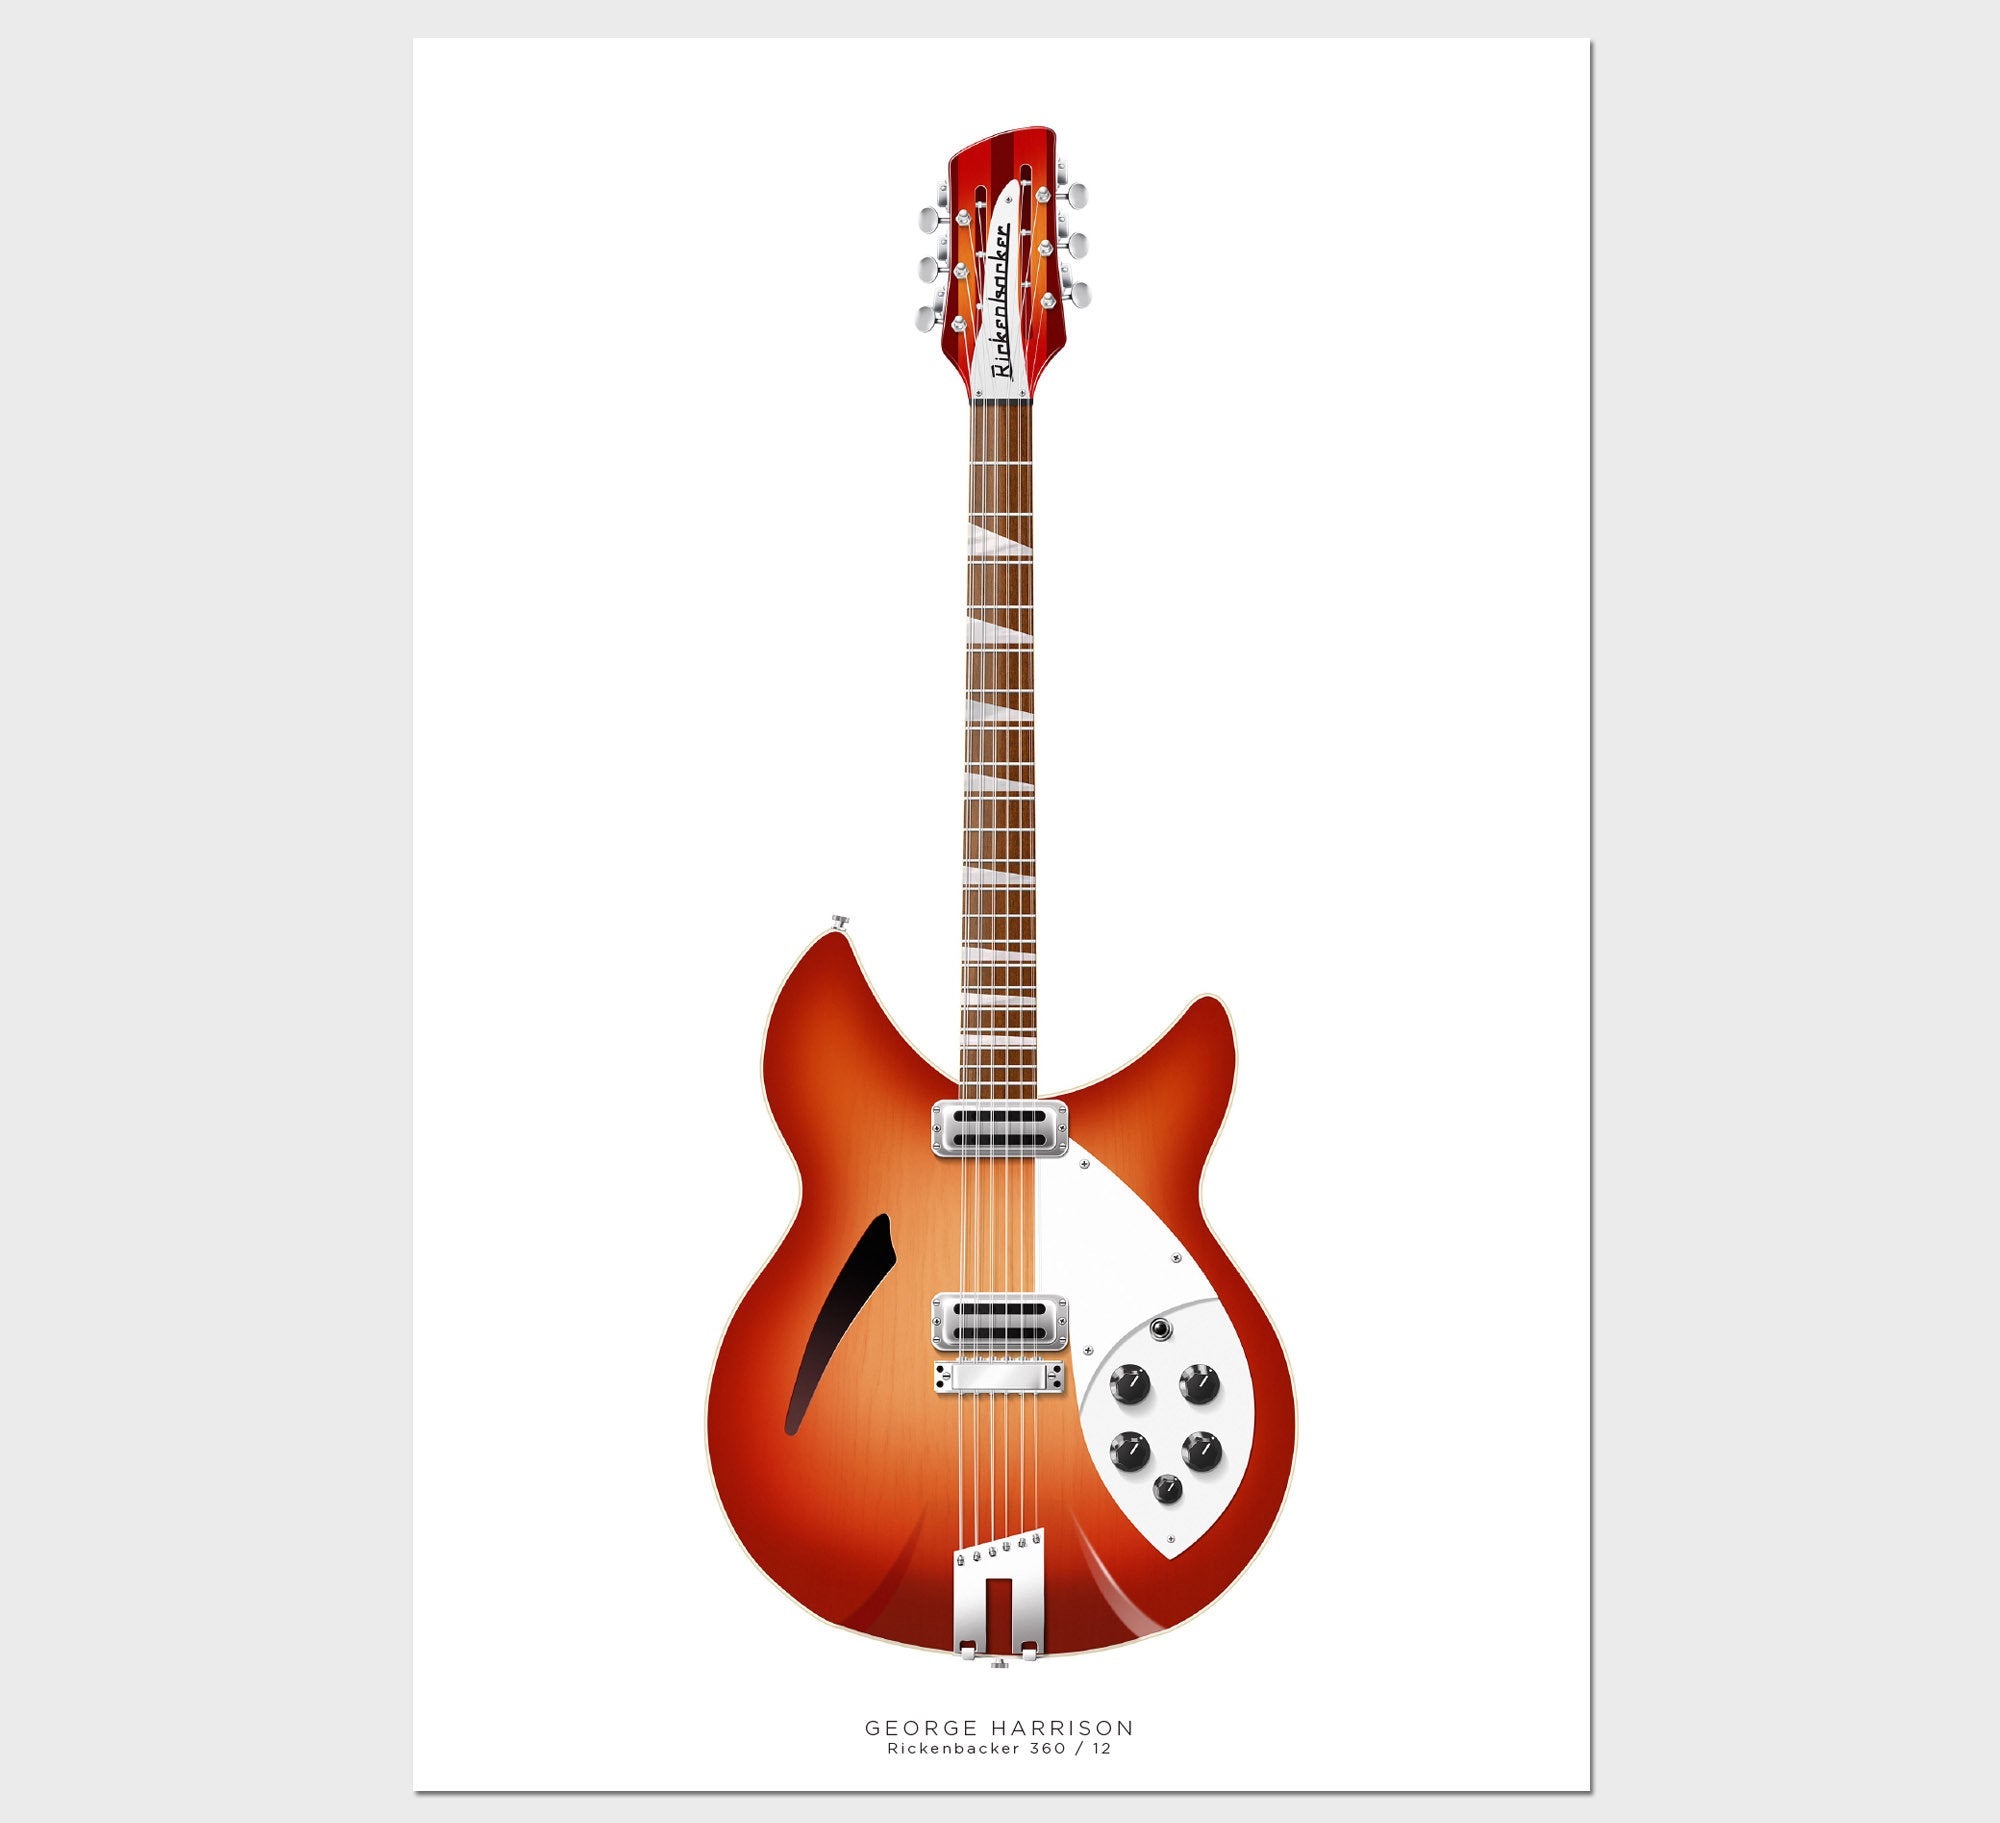 Rayzm Porte-Guitare avec verrouillage automatique,Support Mural pour  Guitares Classiques/Acoustiques/Électriques,Basse… : acheter des objets  Beatles, Lennon, McCartney, Starr et Harrison